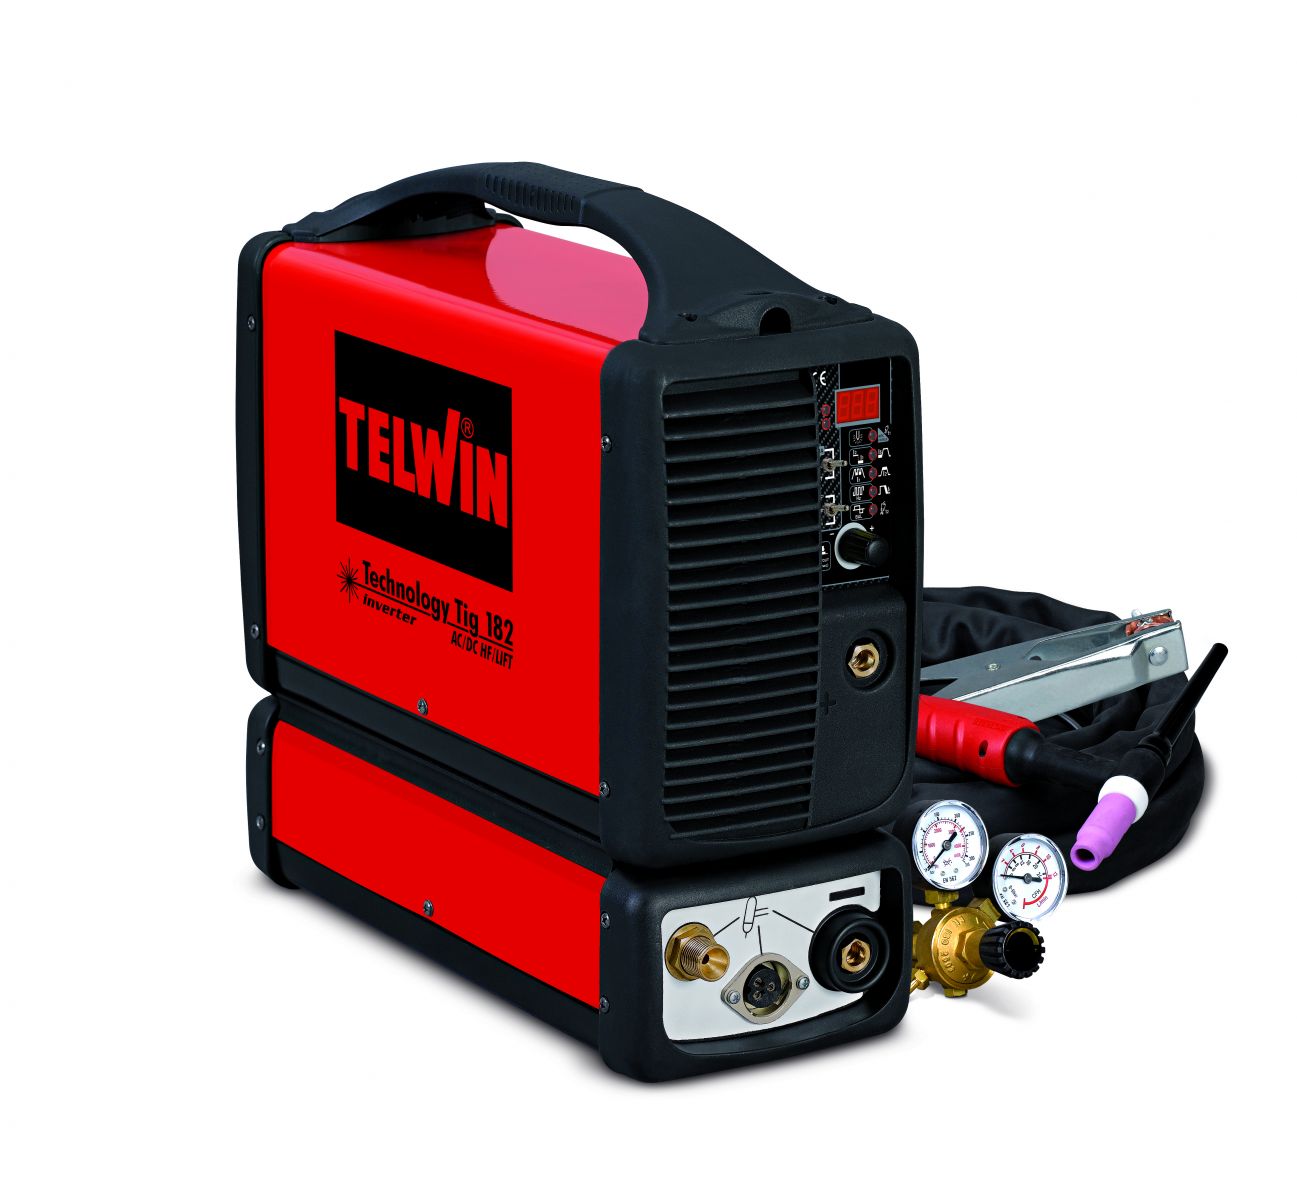 Telwin Technology TIG 182 AC/DC - HF/Lift - TIG Schweissgerät